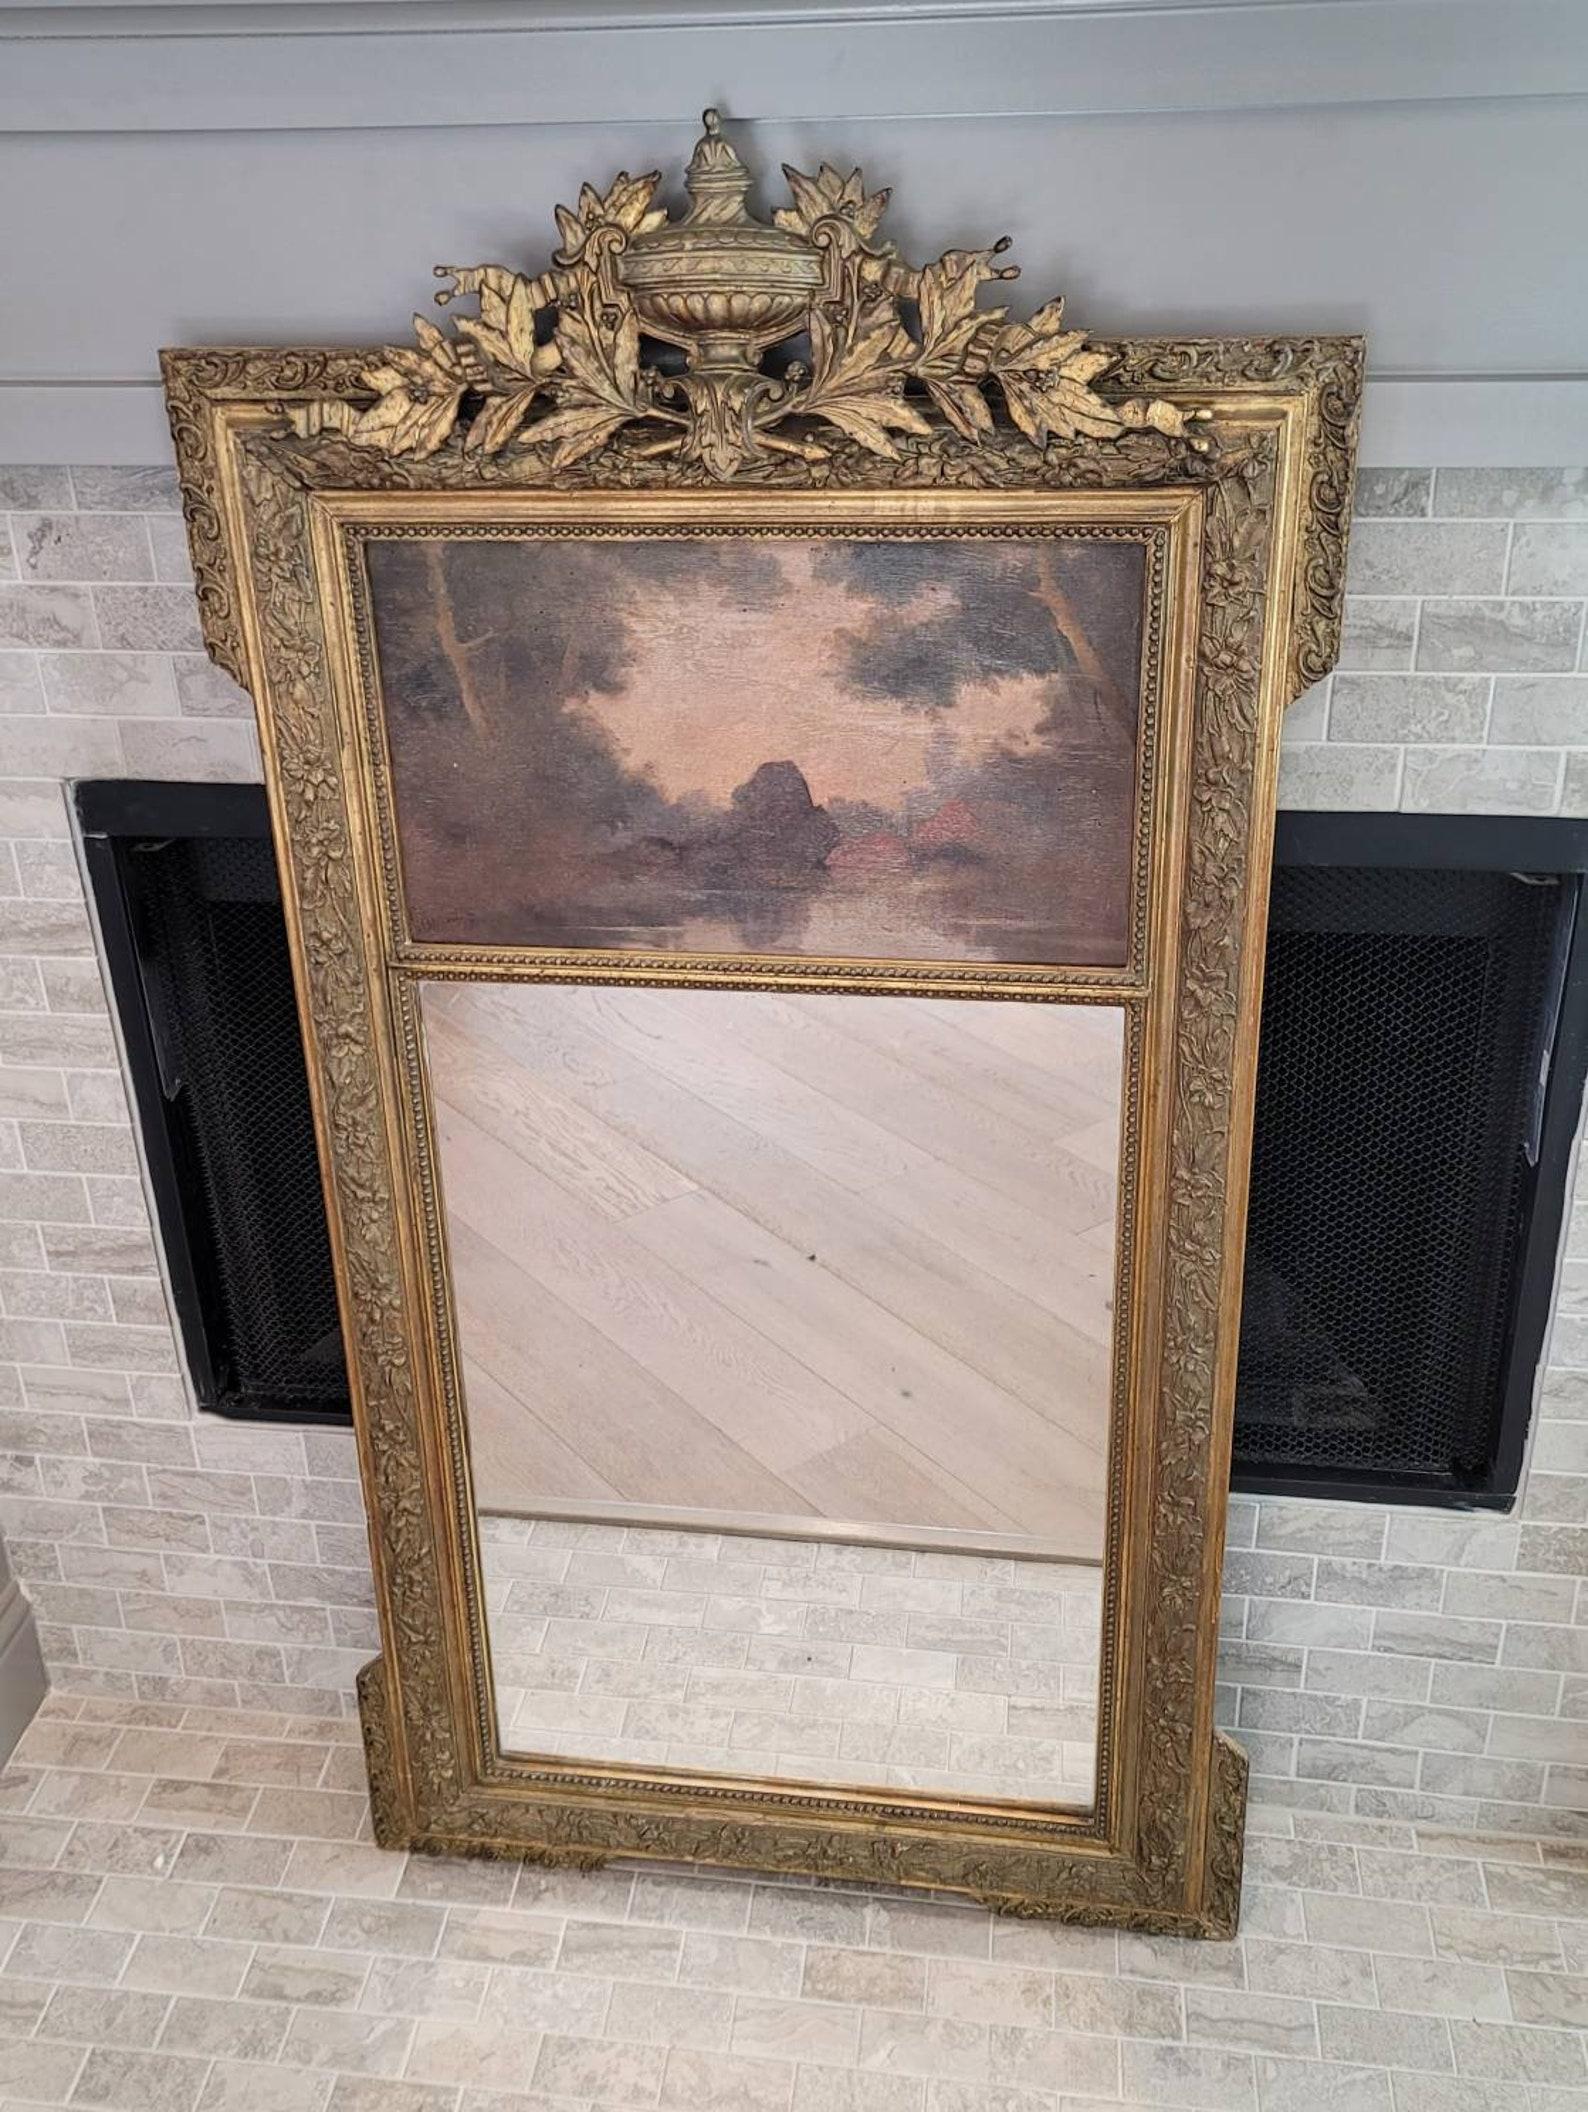 Superbe miroir trumeau français de la période Belle Époque (1871-1914), sculpté et peint à la main, vers 1890.

Né en France à la fin du 19e siècle et au début du 20e siècle, ce meuble a été magnifiquement réalisé à la main dans un style Louis XVI